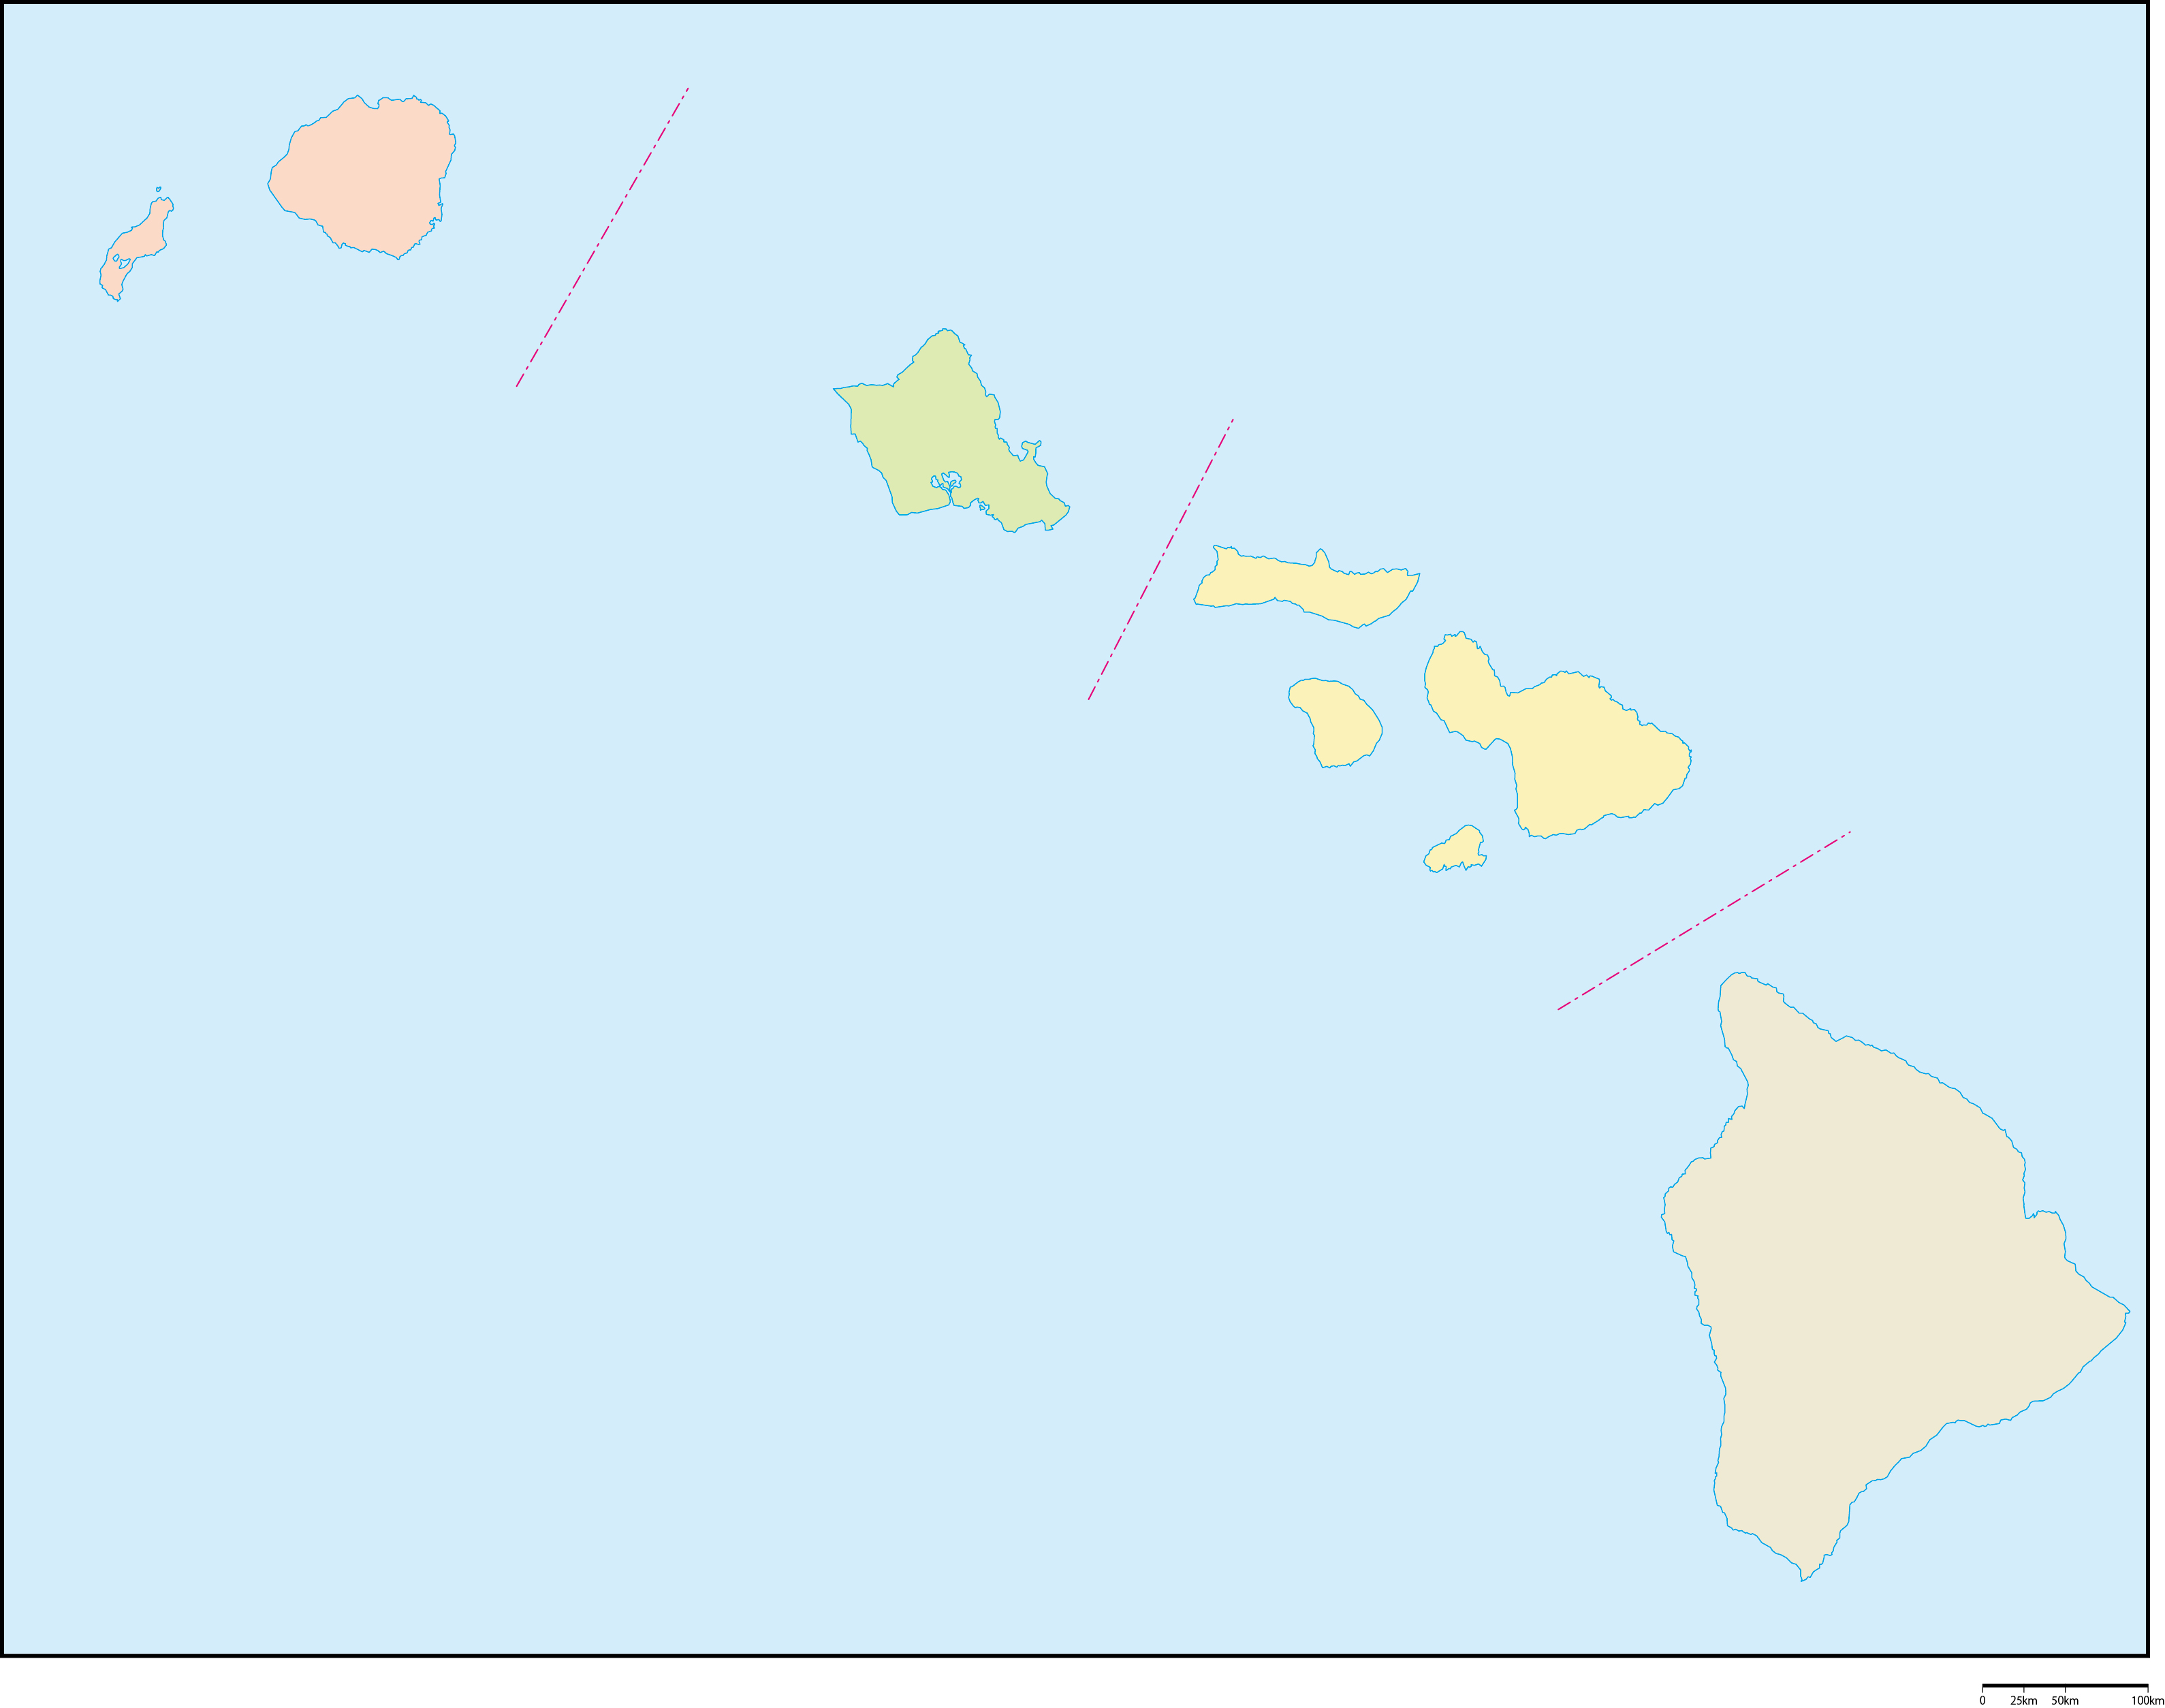 ハワイ州郡色分け地図フリーデータの画像